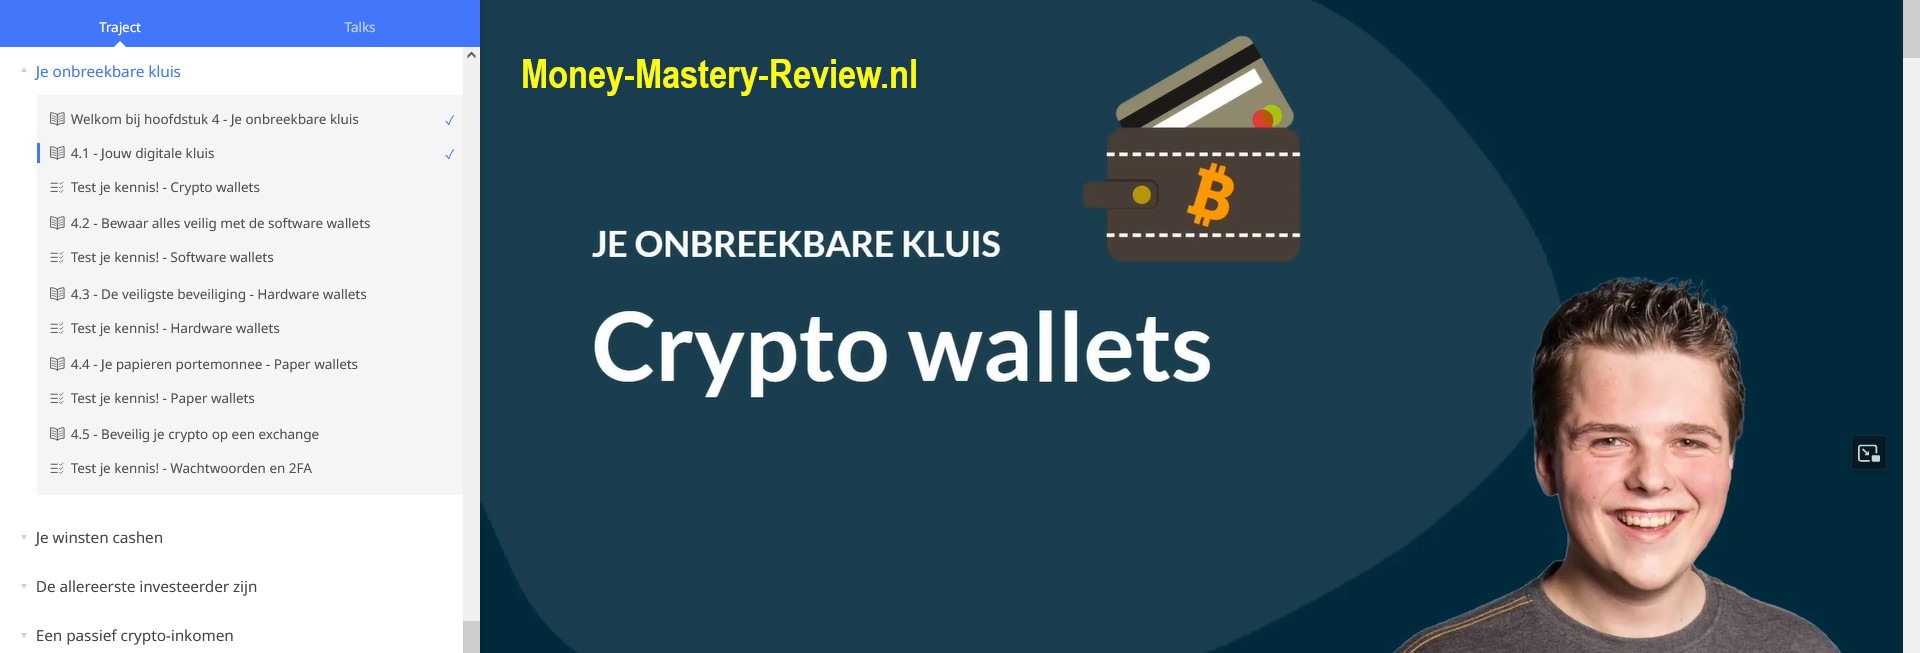 Crypto Masterclass Review 4 Crypto Wallets